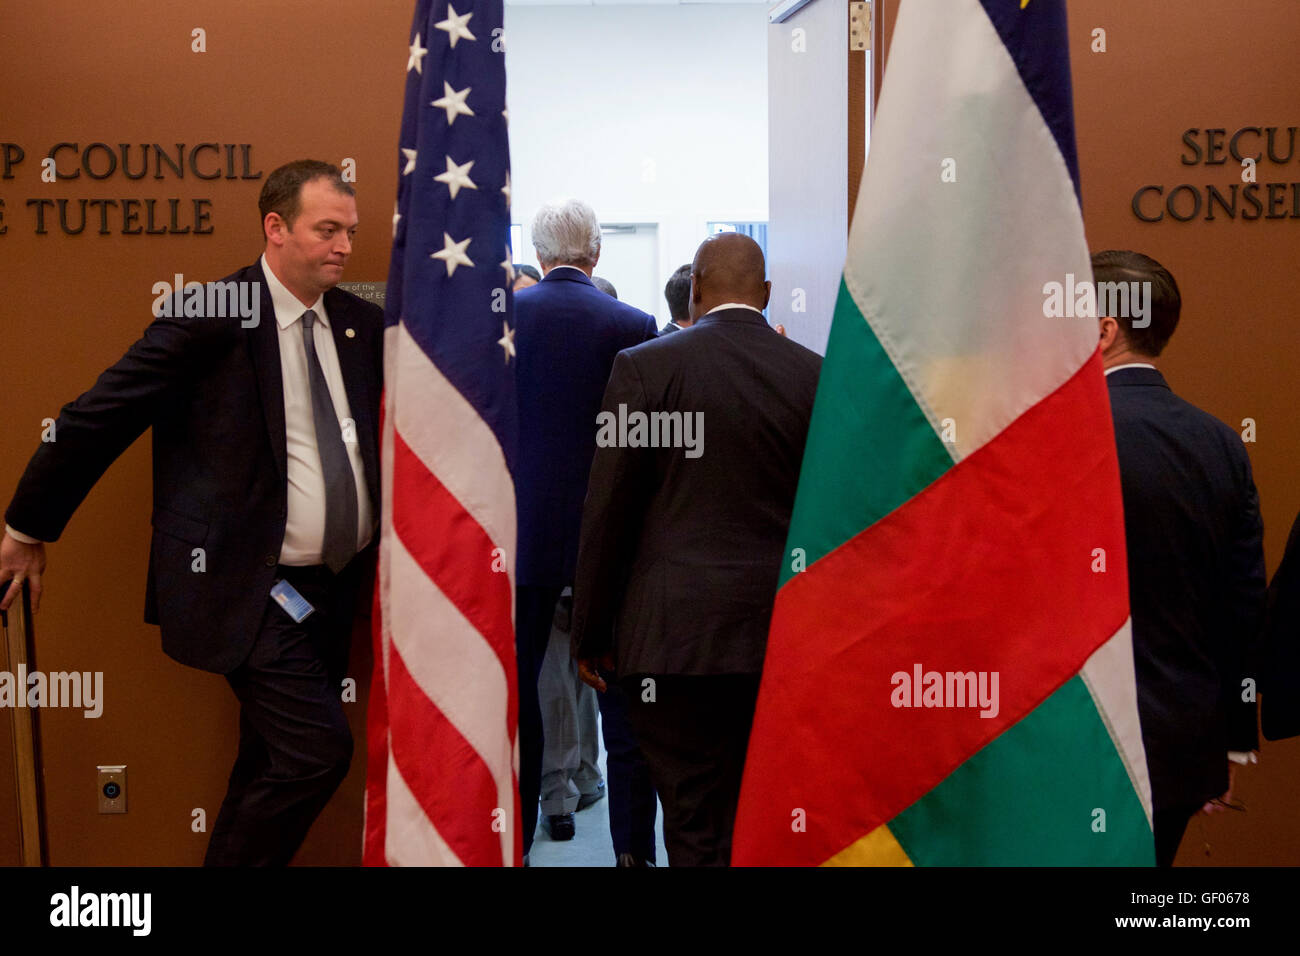 Kerry Secrétaire et Président de la République d'Afrique centrale Touadéra Marchez dans une salle pour tenir une réunion après la signature de l'Accord sur le Changement Climatique COP21 le jour de la Terre à New York Banque D'Images